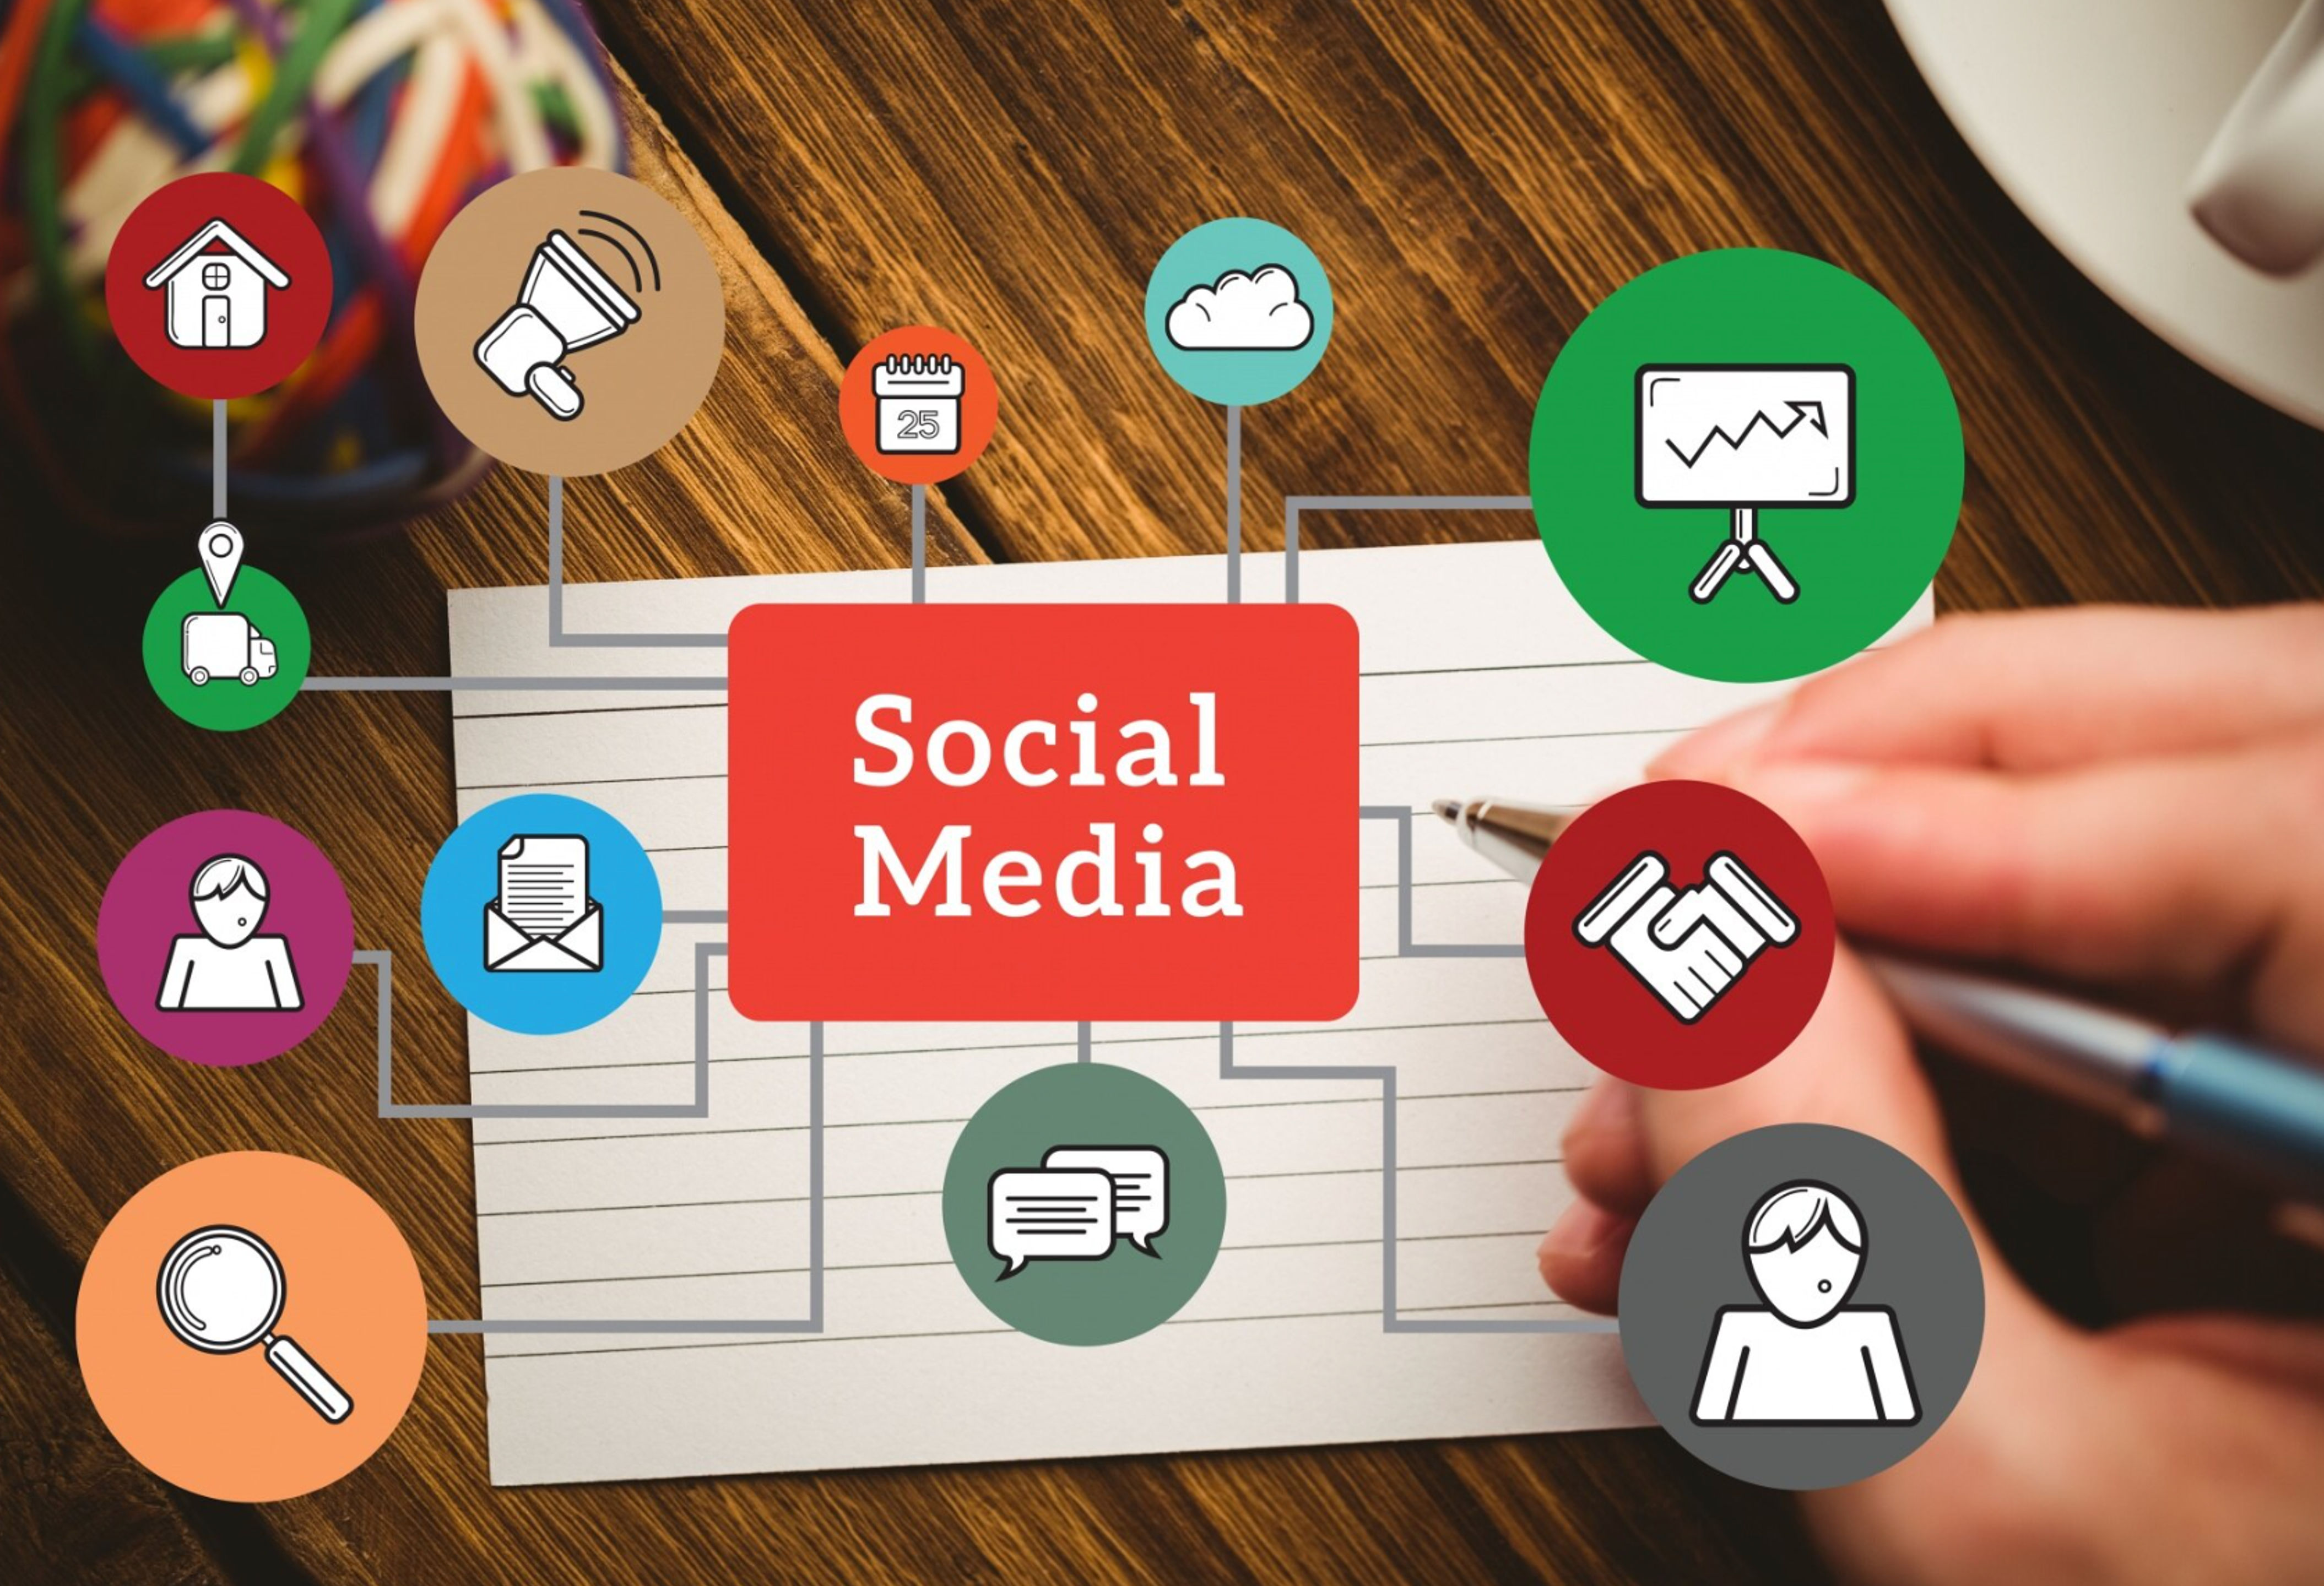 Social media elements